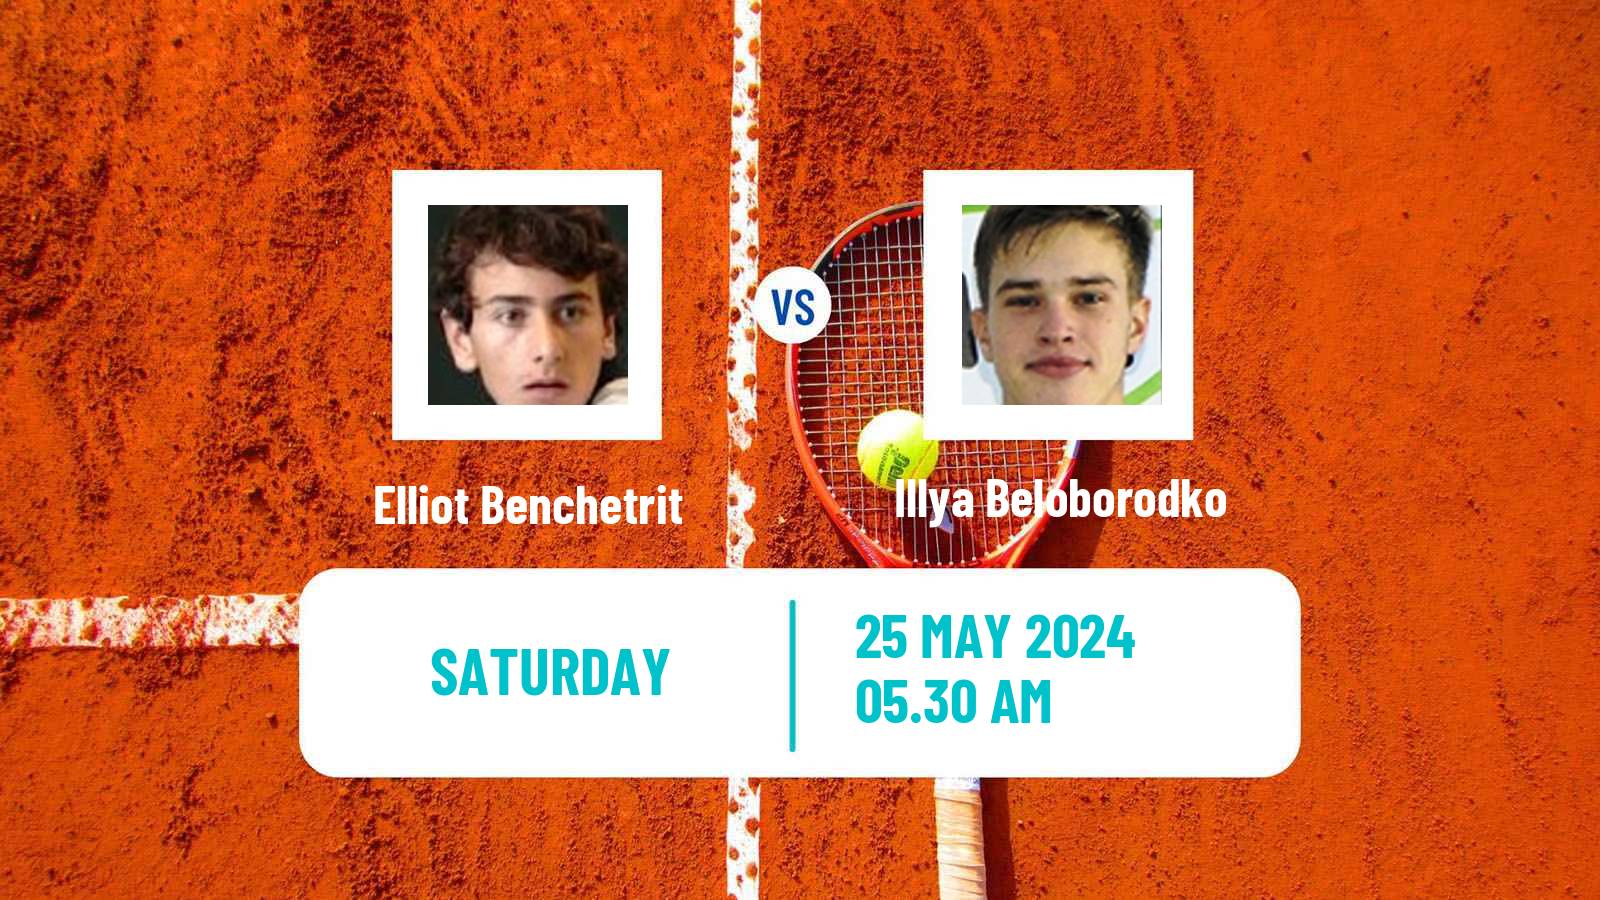 Tennis ITF M15 Bucharest 3 Men Elliot Benchetrit - Illya Beloborodko